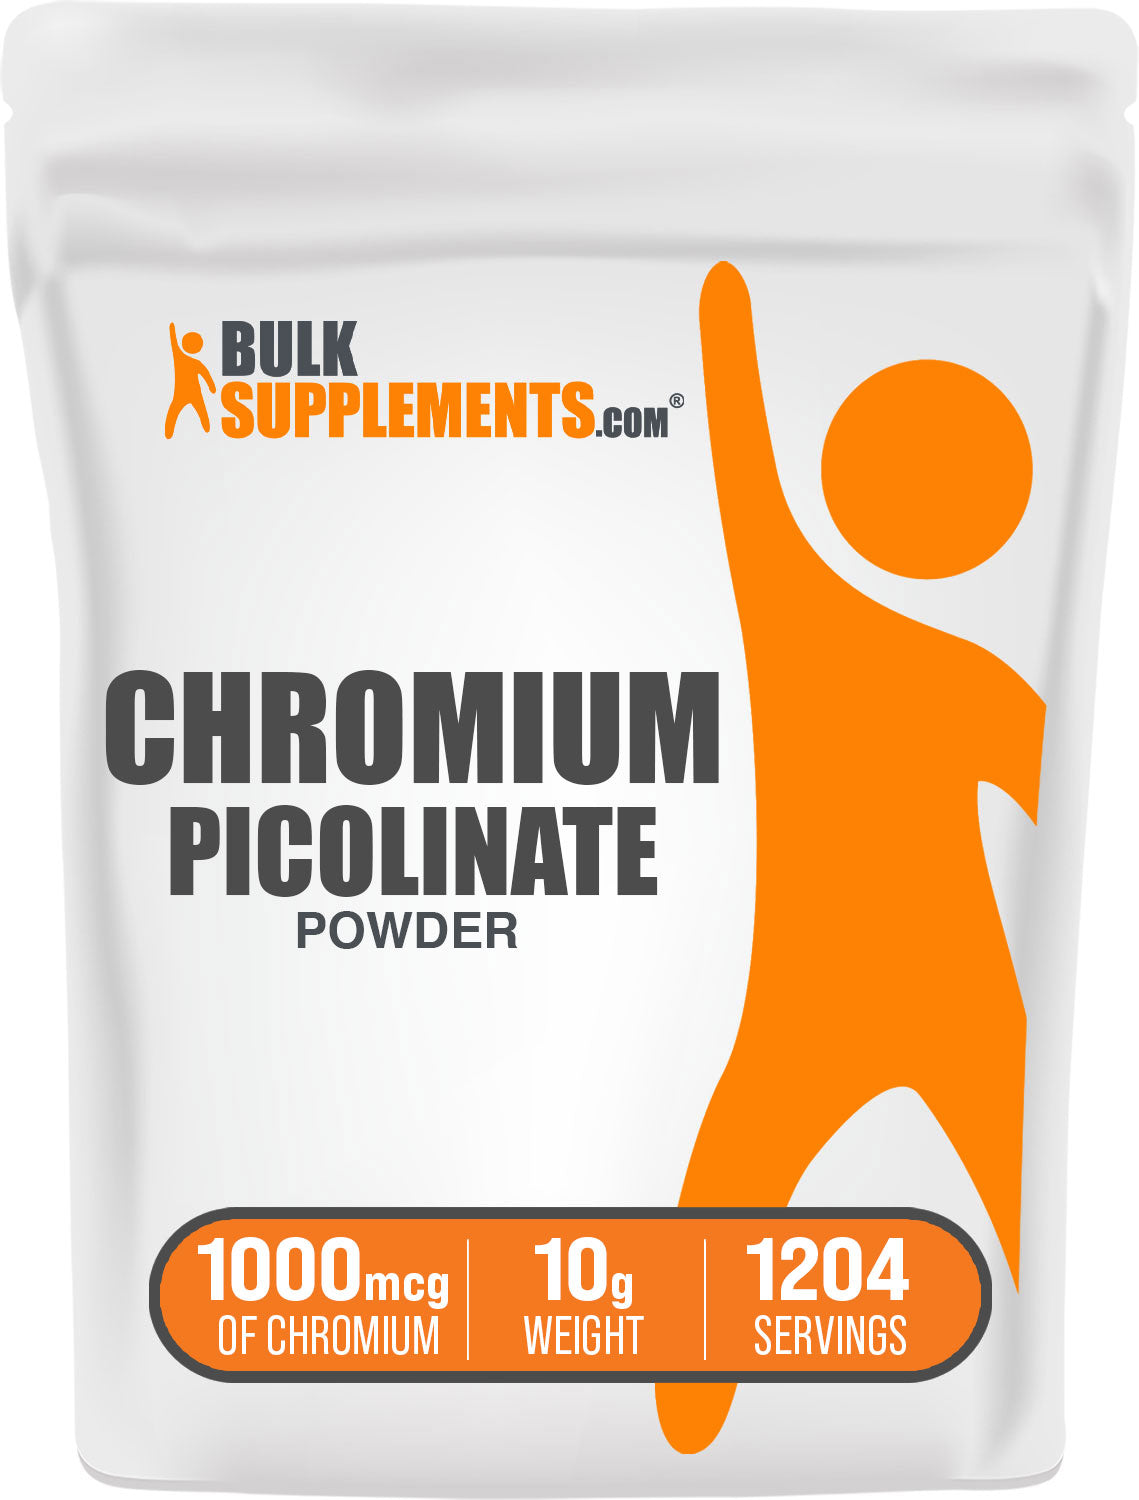 10g chromium picolinate